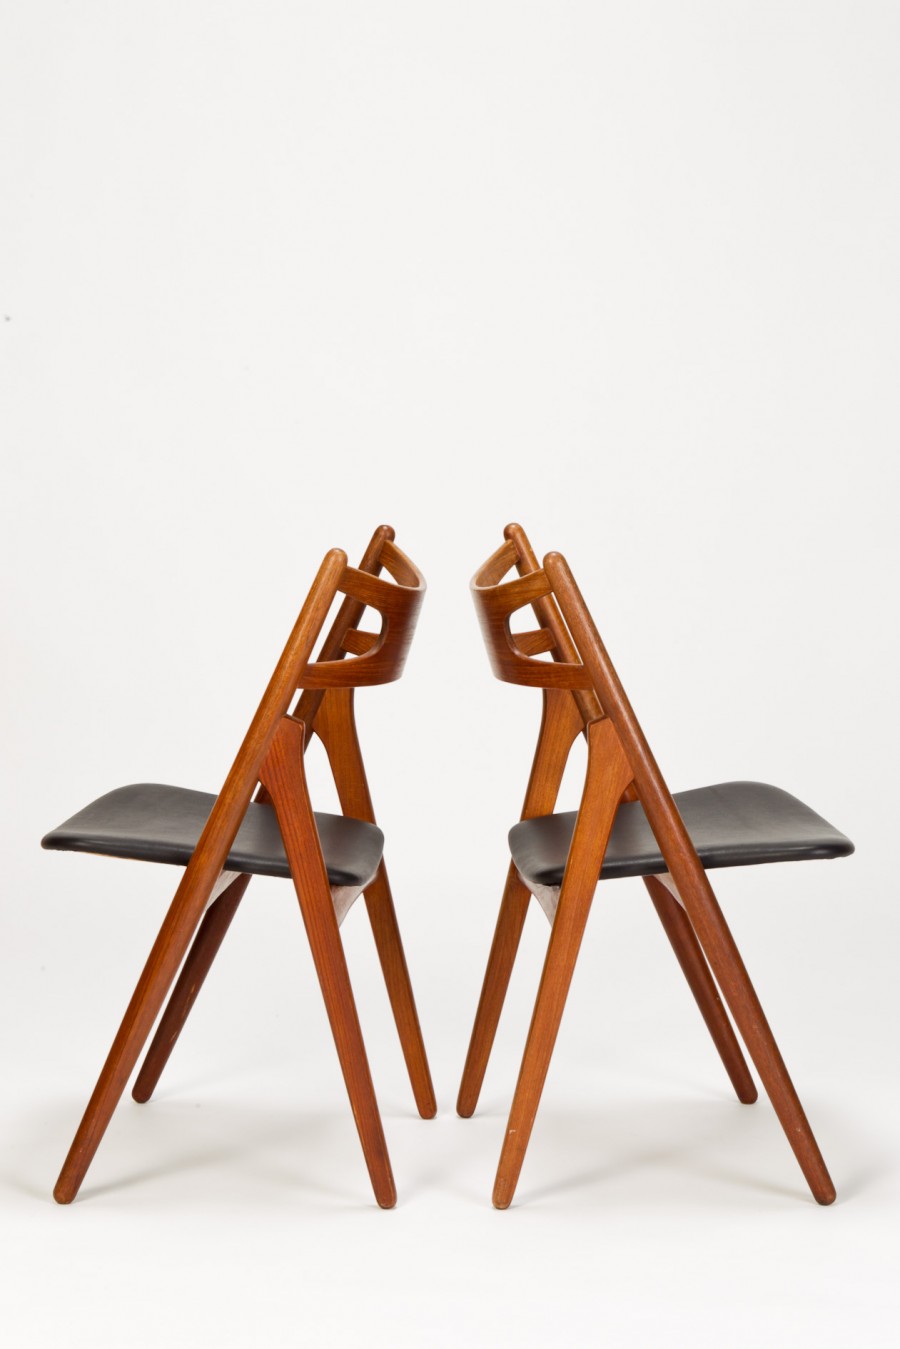 Wegner Teak Sawbuck Stühle von Hans J. Wegner